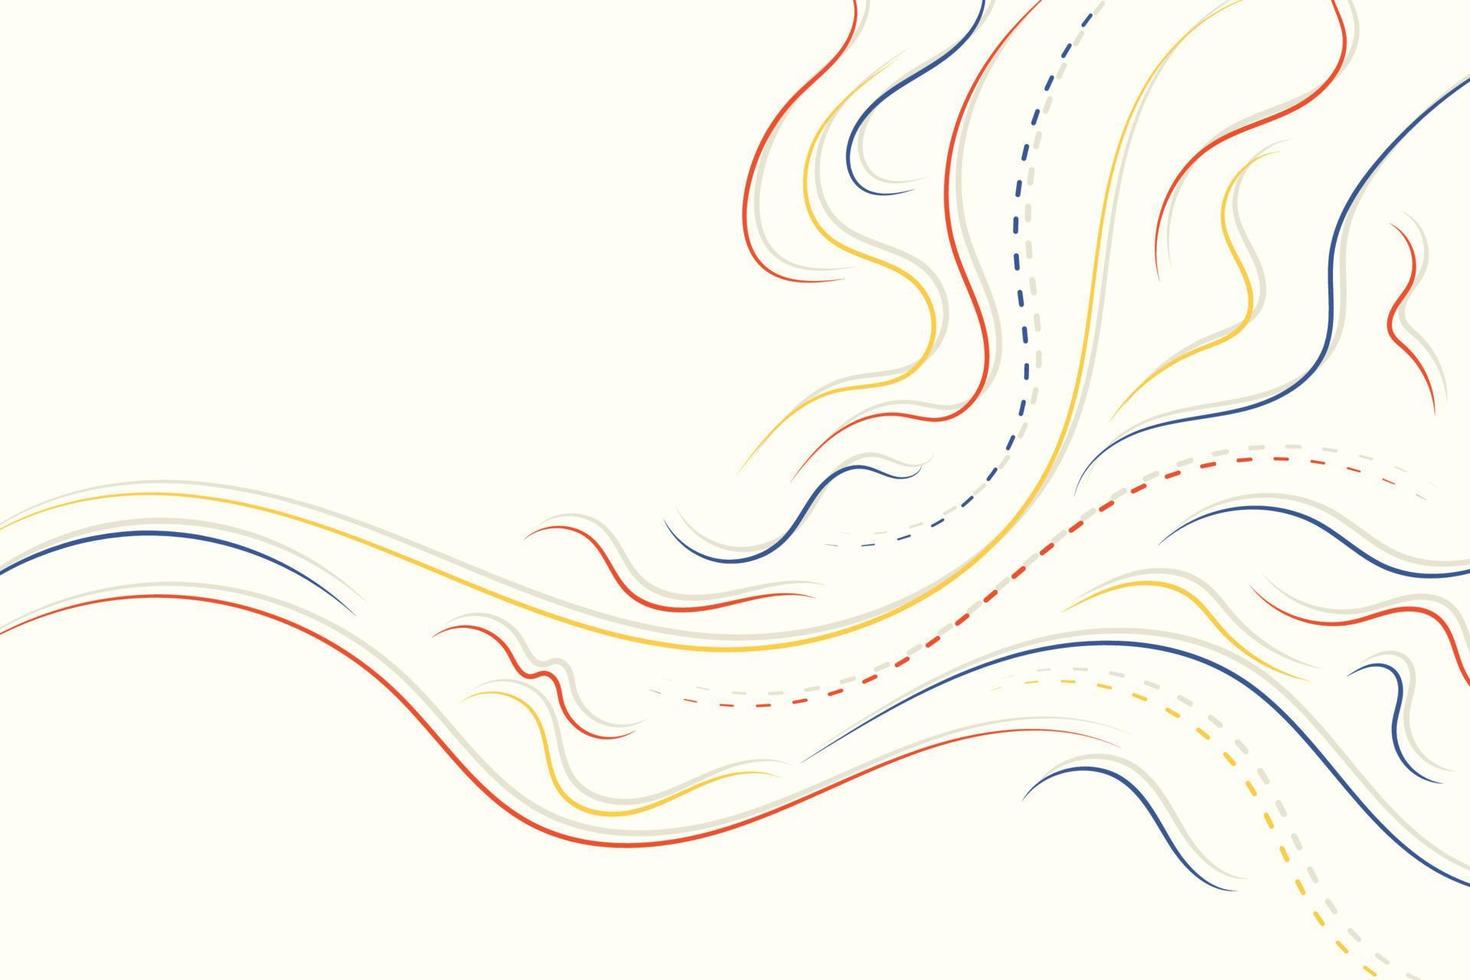 pano de fundo abstrato colorido linhas onduladas e pontilhadas. modelo de composição de fundo de ondas de linha suave minimalista para criar pôster, folheto, cartões e apresentação vetor